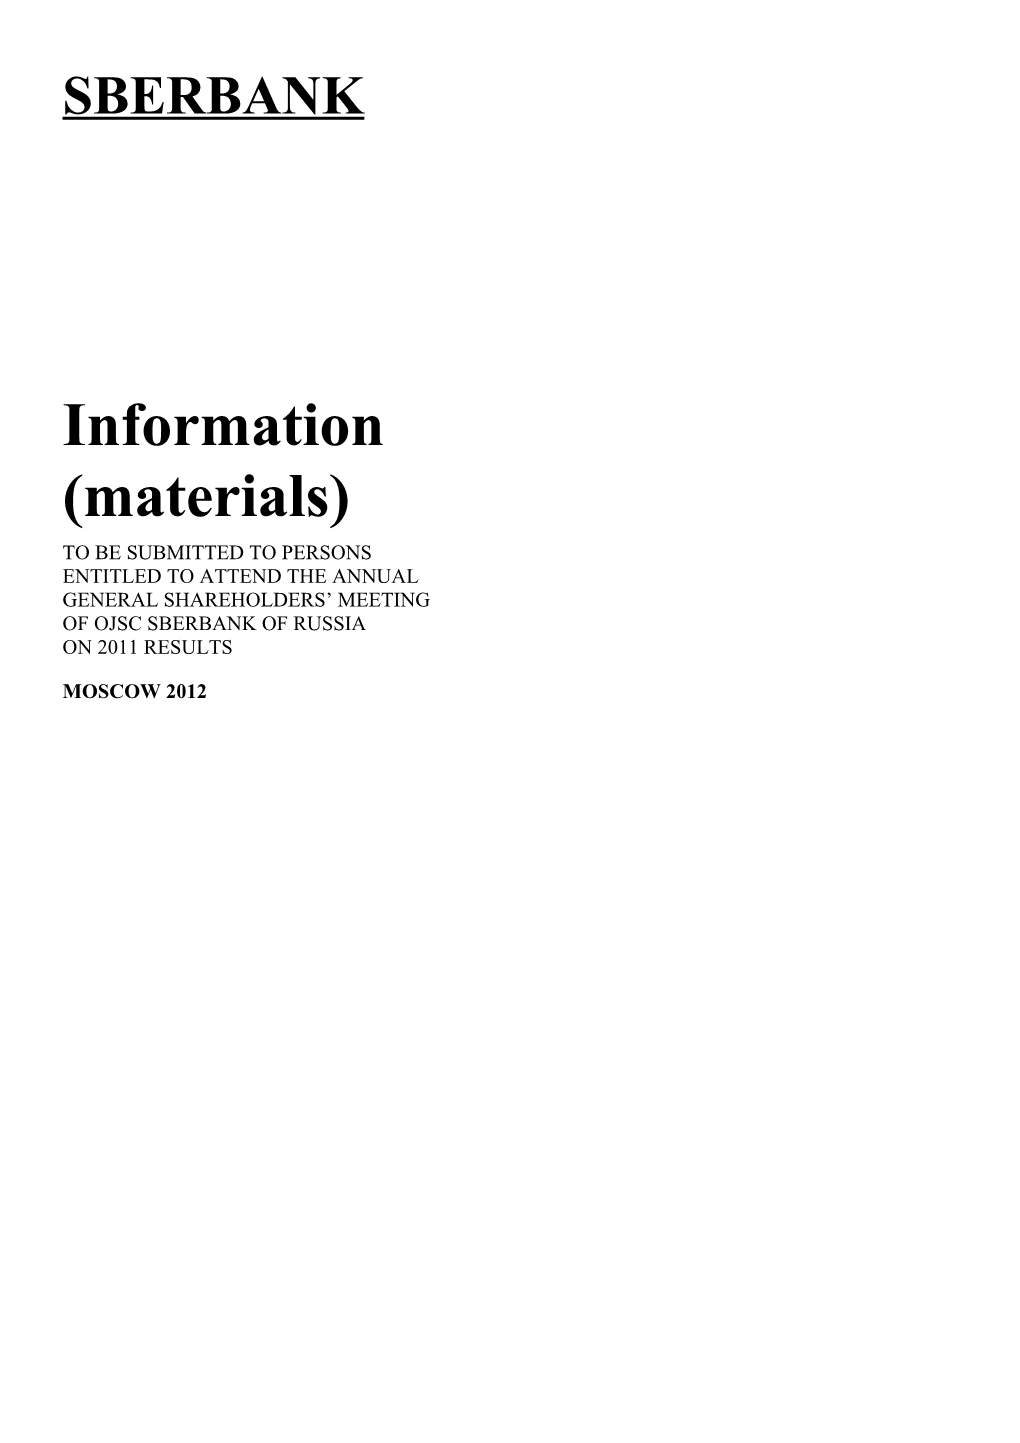 Information (Materials)